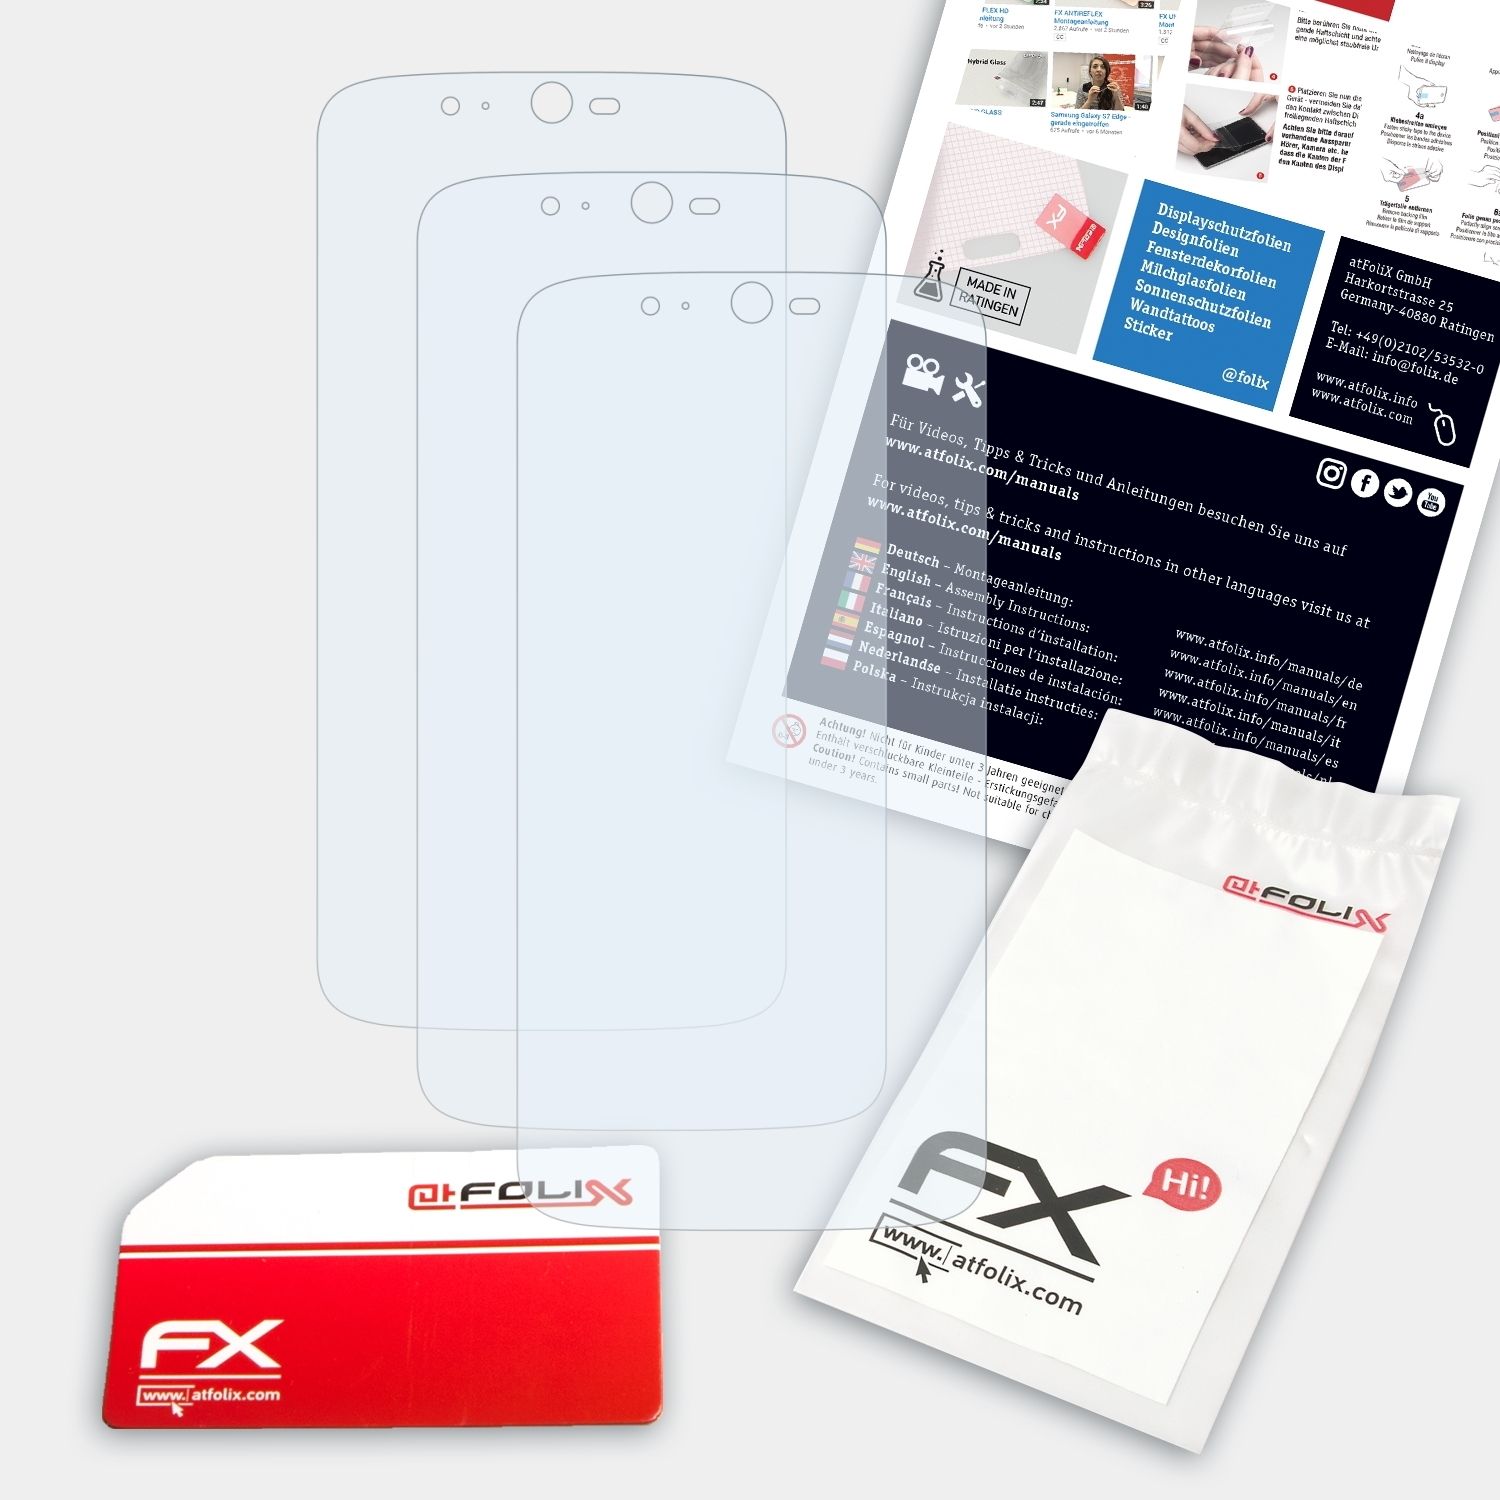 Zest Acer FX-Clear Liquid Displayschutz(für 3x ATFOLIX Plus)